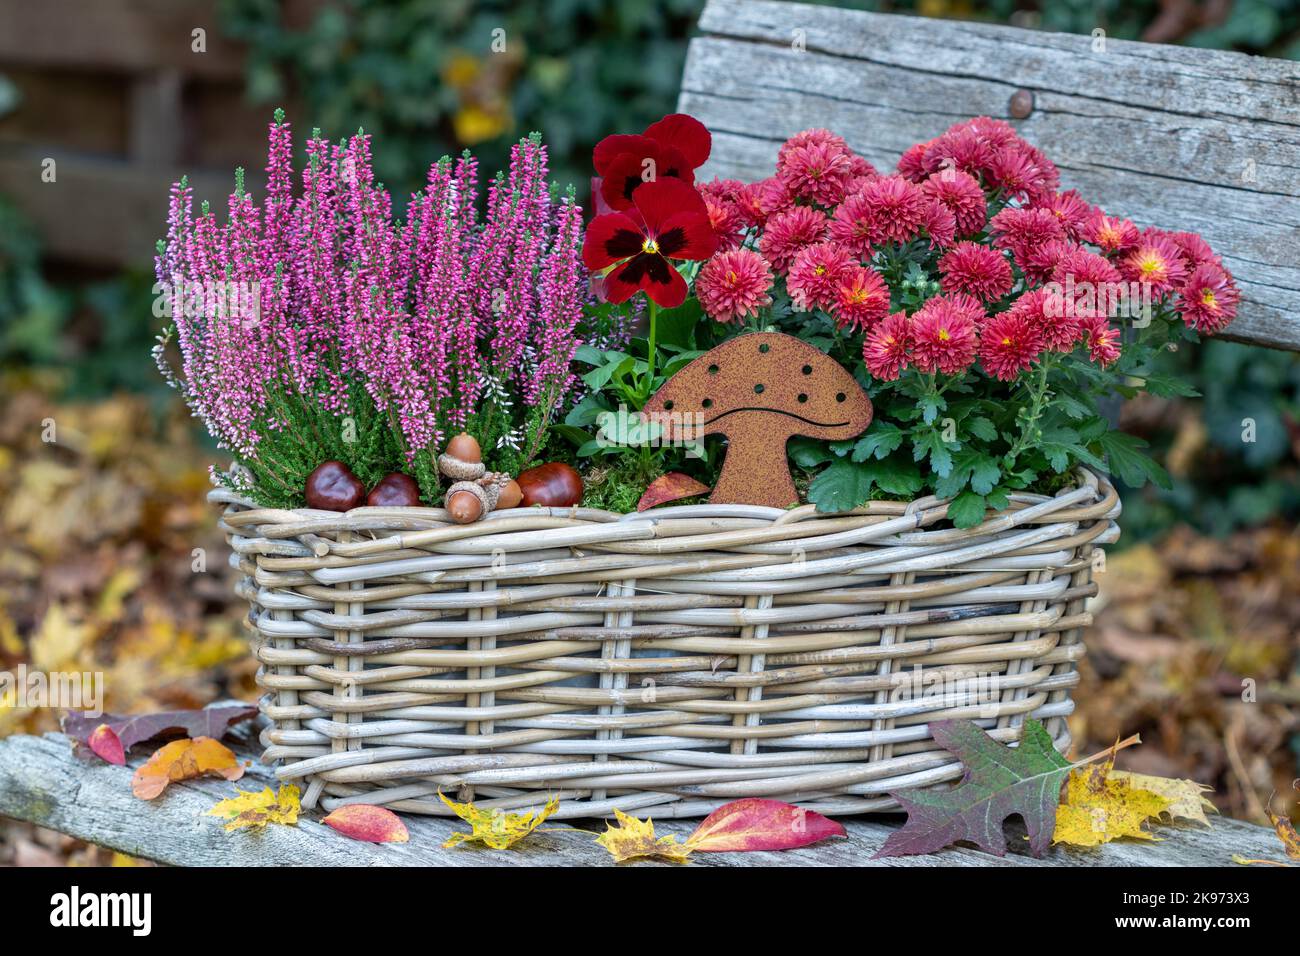 fiore di viola rossa, crisantemo e fiore di erica in cesto in giardino autunnale Foto Stock